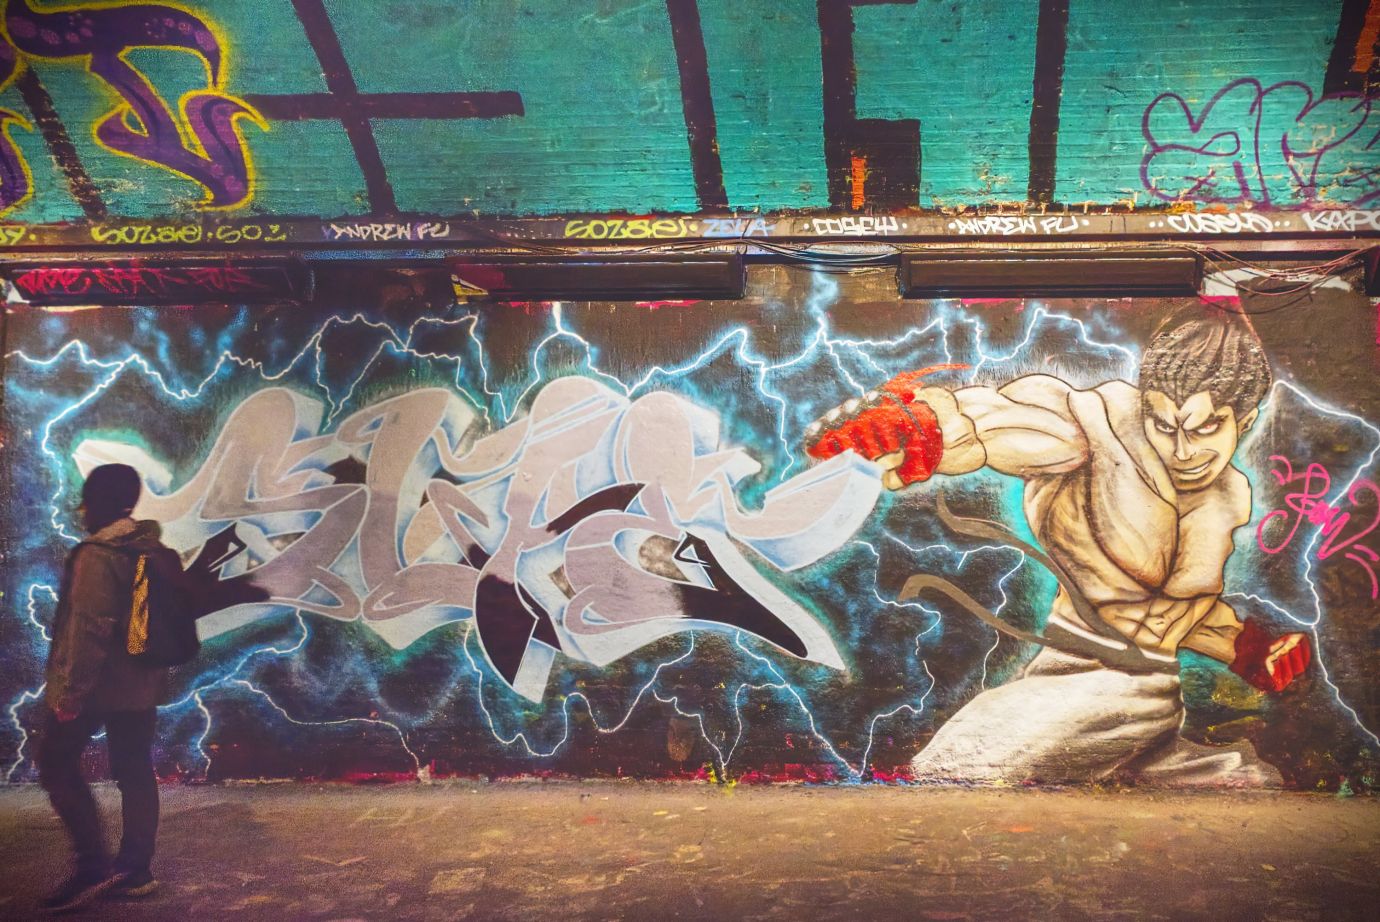 Vaults-graffiti-Waterloo-London-2854-30032022